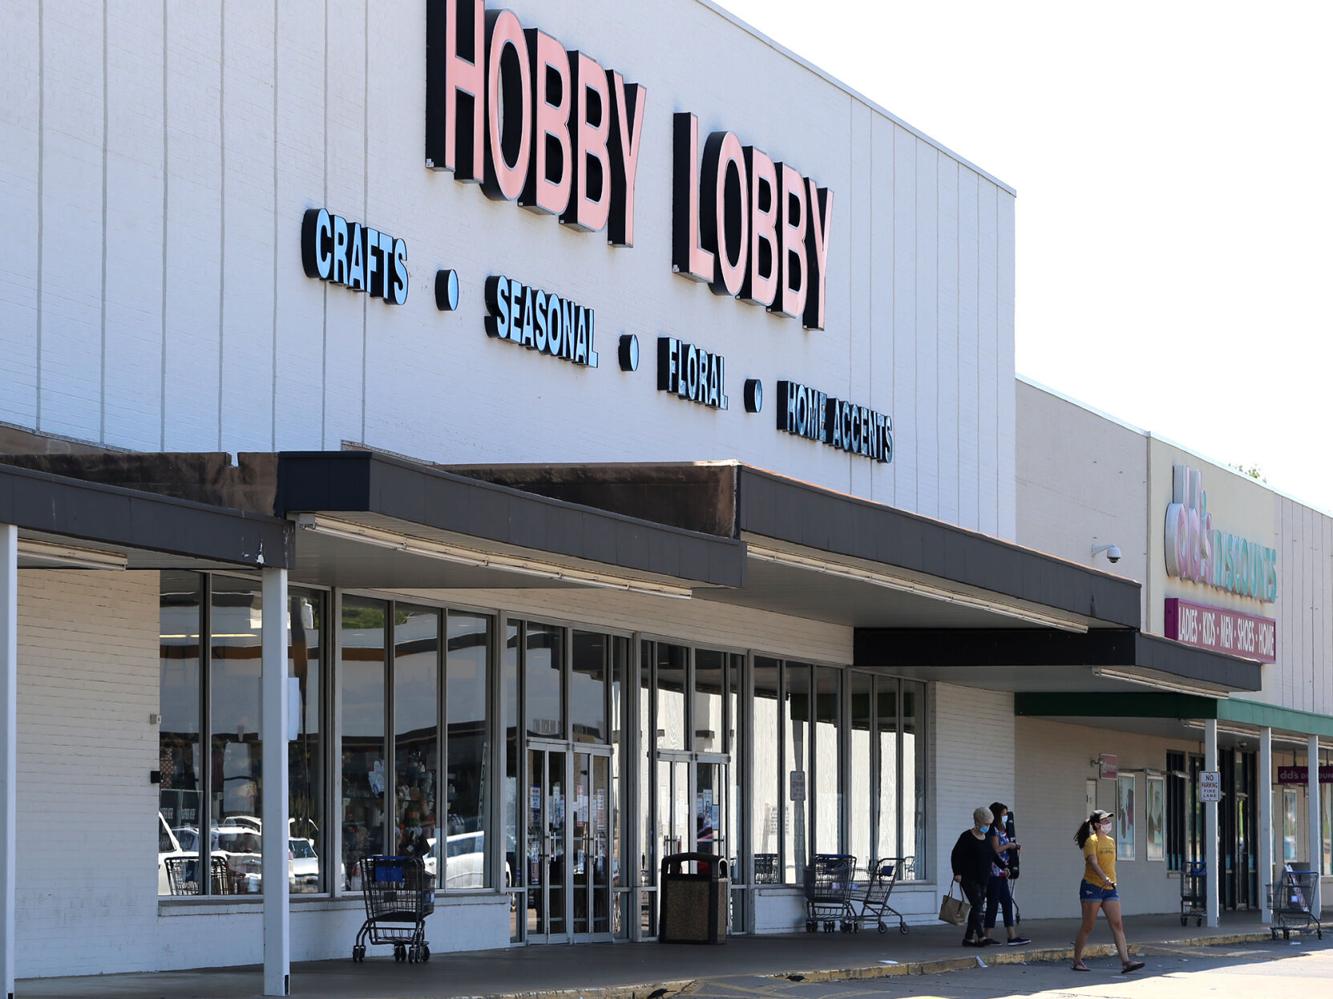 Hobby Lobby among retail chains raising minimum pay in Waco